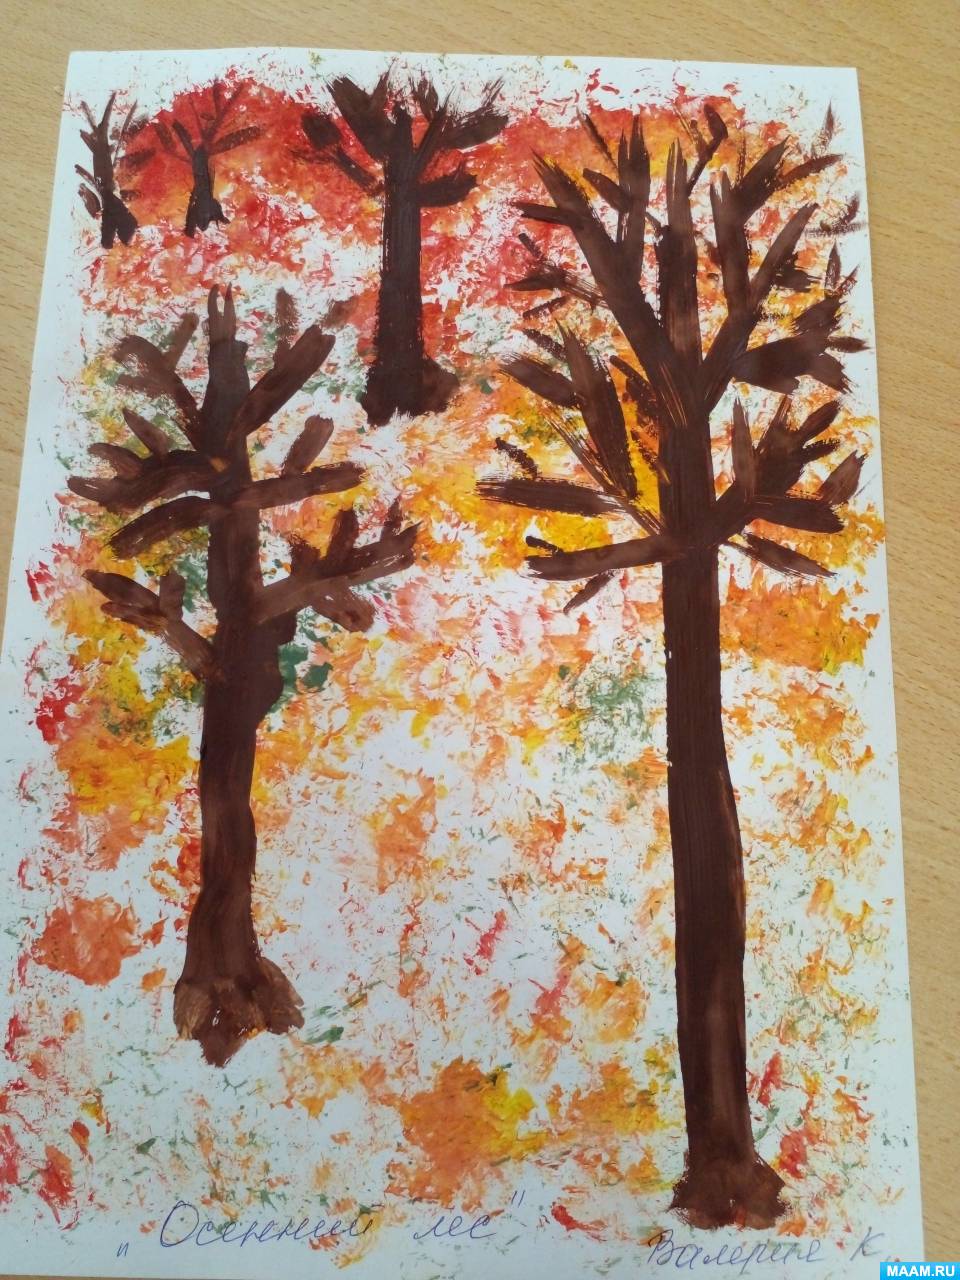 Детский мастер-класс по рисованию с помощью отпечатка целлофановым пакетом «Осенний лес» для детей с ОВЗ